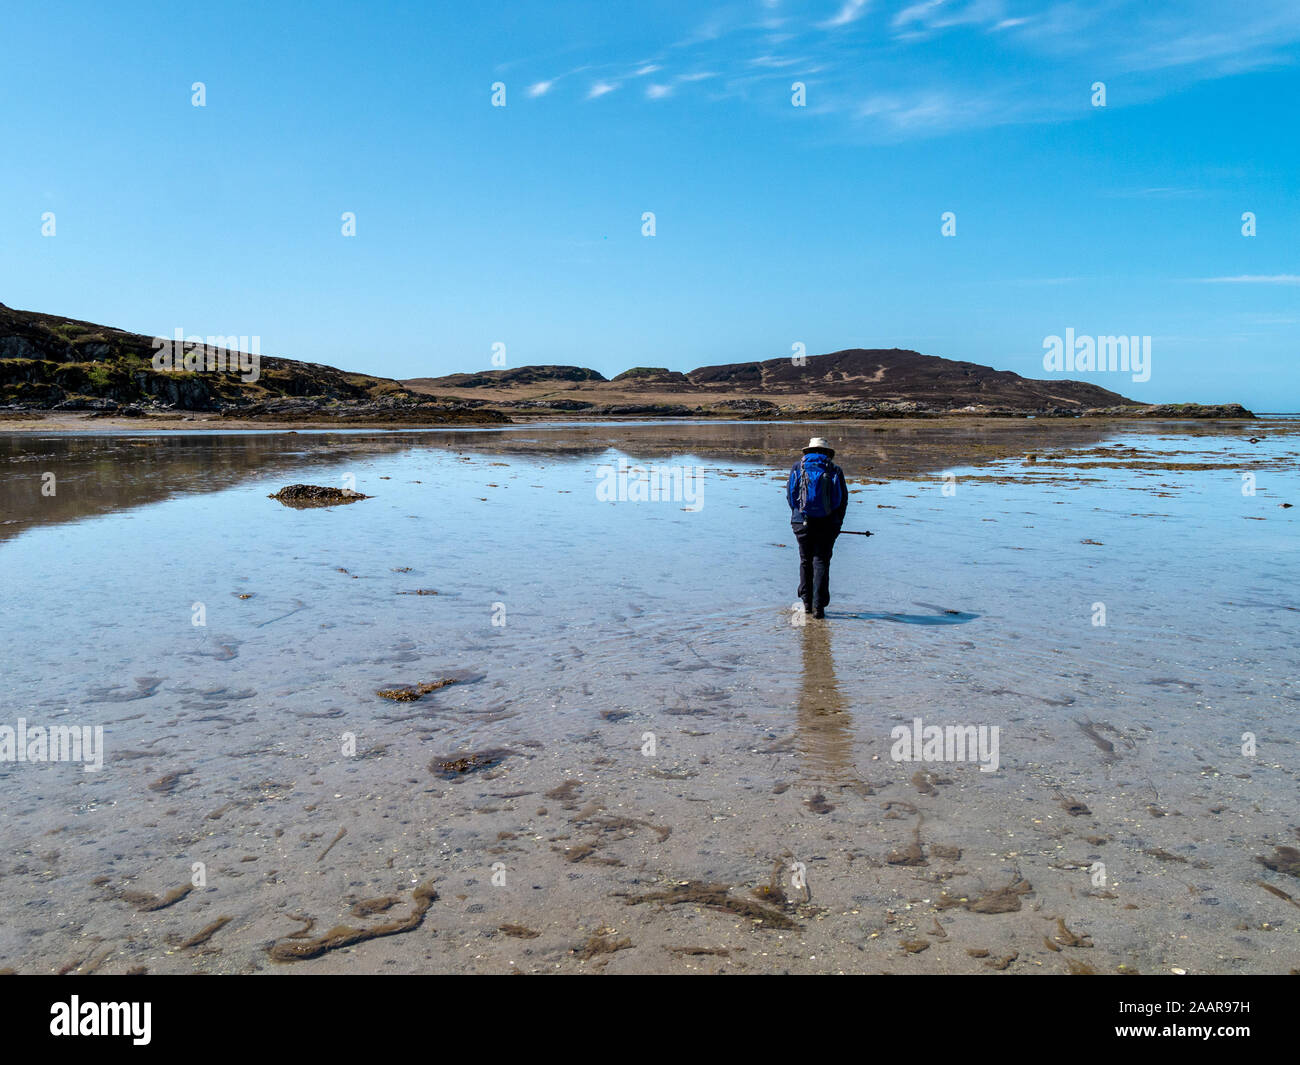 Turisti a piedi da Colonsay all'isola di marea di Oronsay attraverso il filamento, una spiaggia sabbiosa causeway tra le due isole delle Ebridi, Scotland, Regno Unito Foto Stock